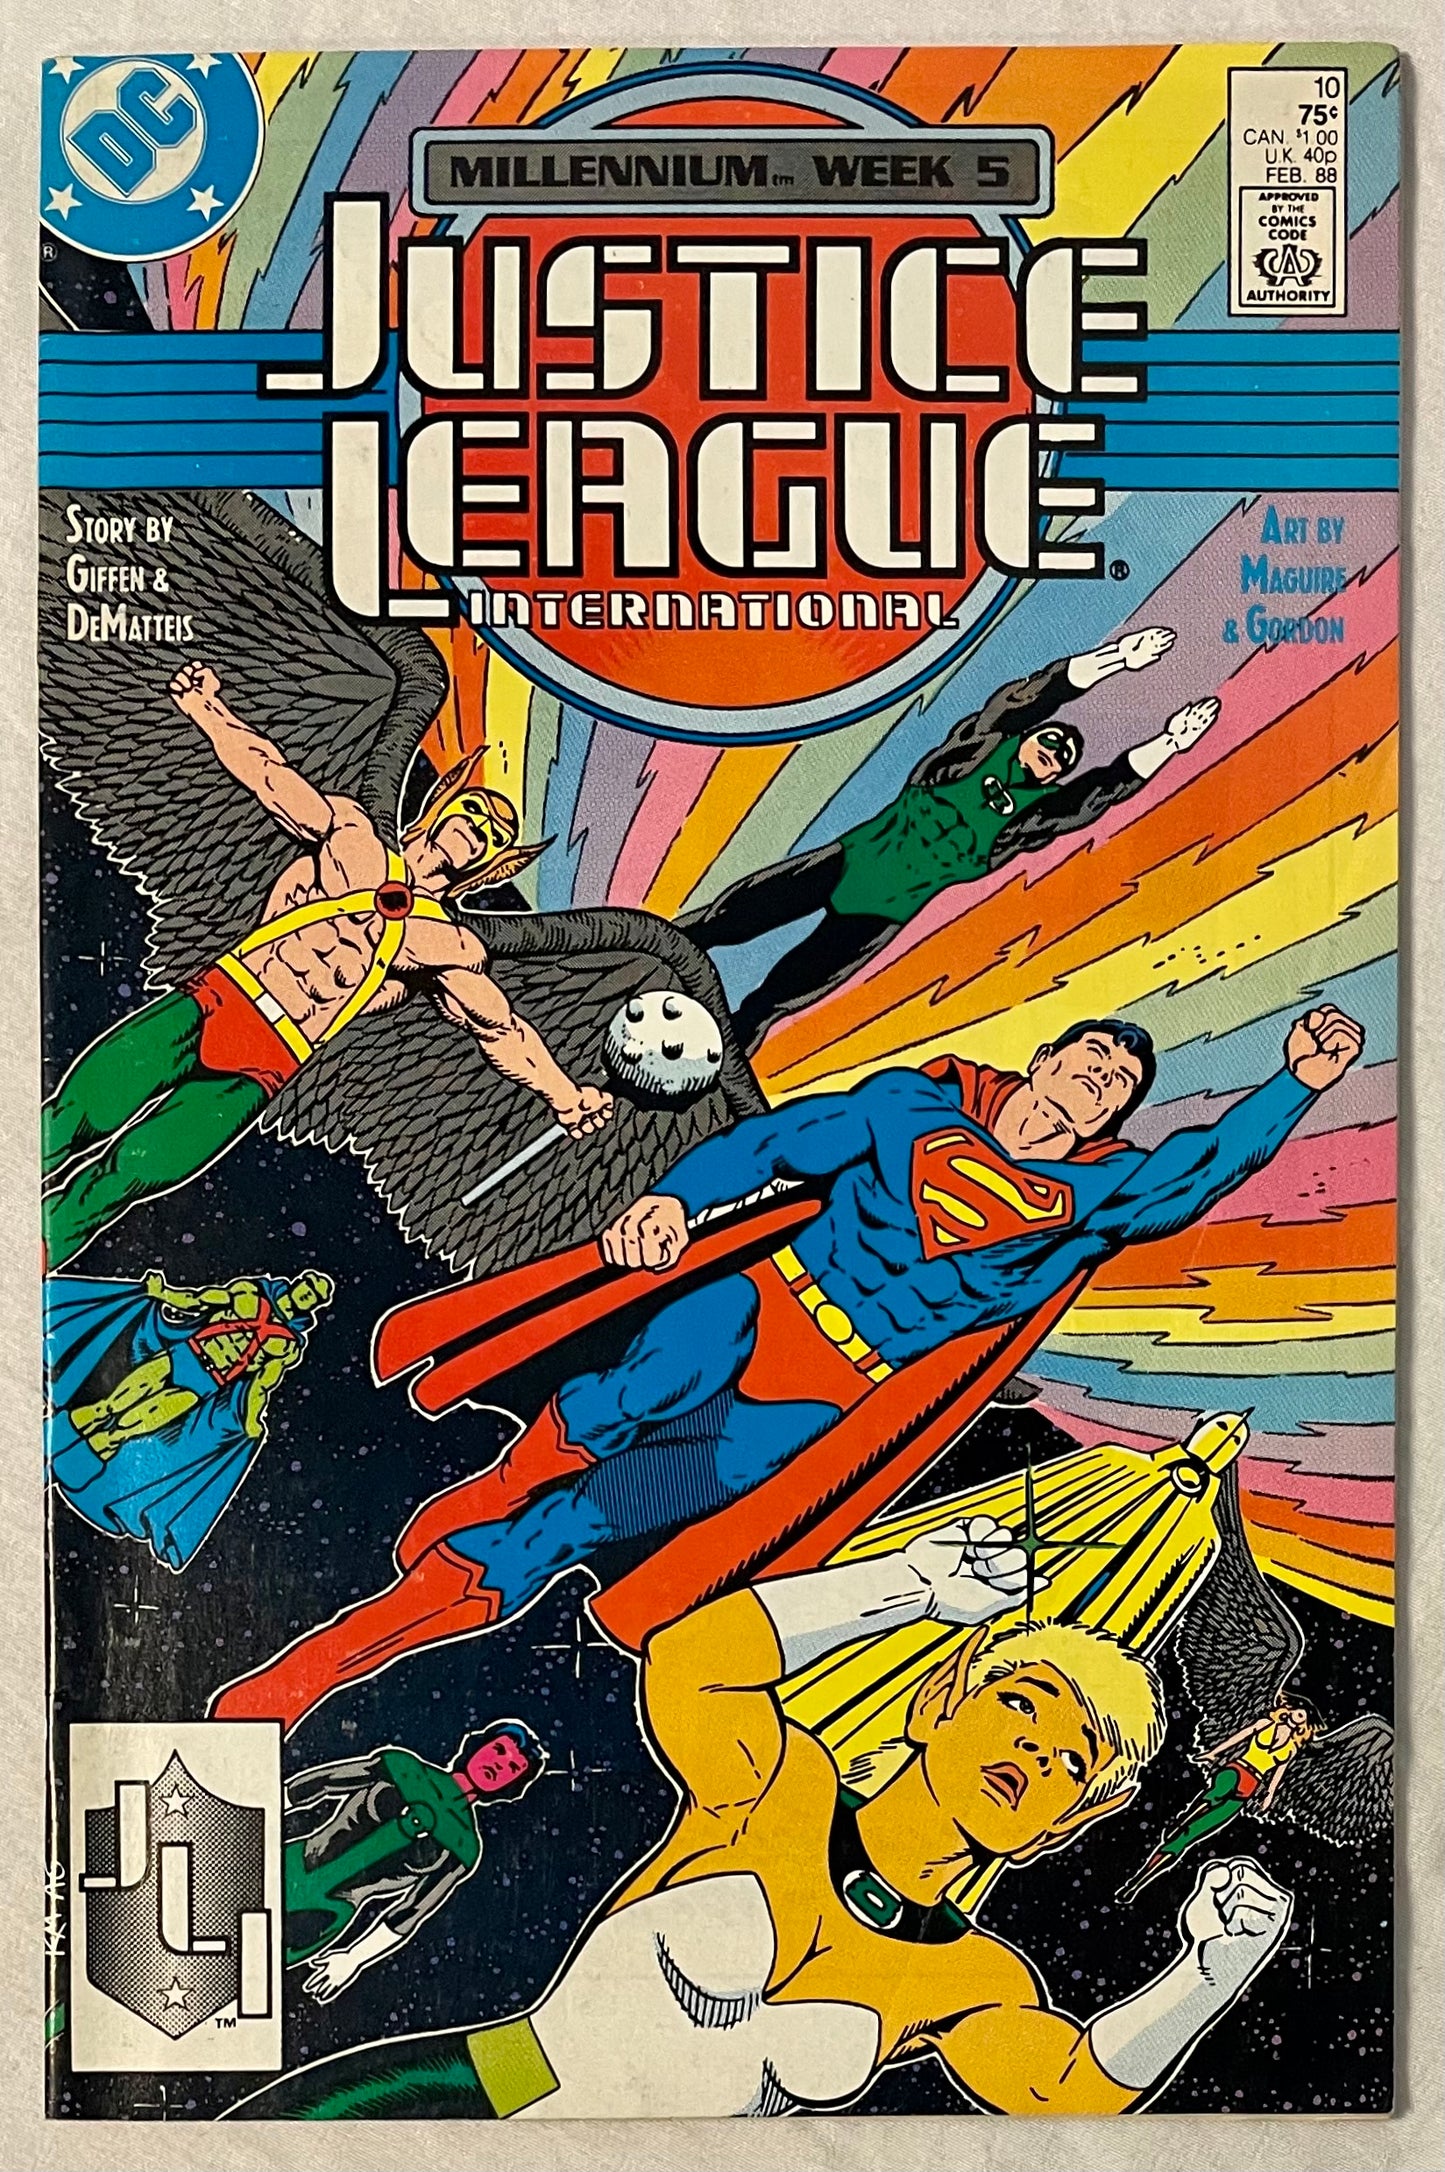 DC Comics Justice League International No. 10